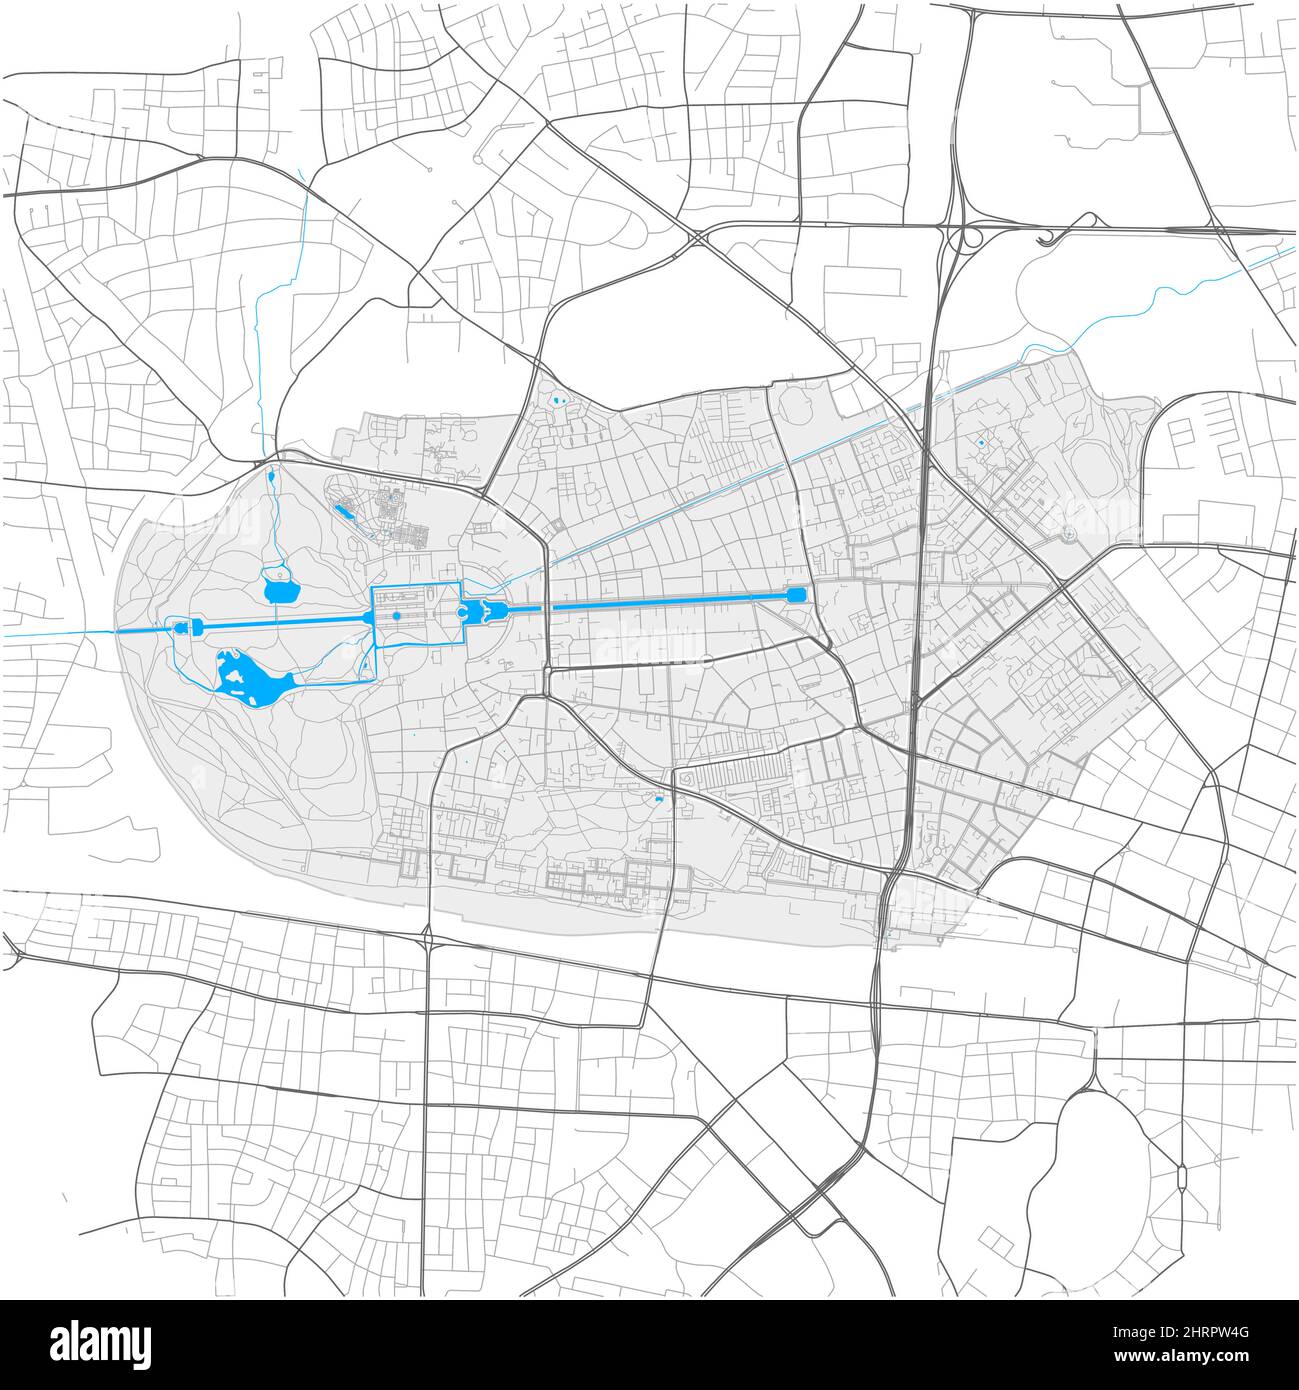 Neuhausen-Nymphenburg, München, DEUTSCHLAND, mappa vettoriale ad alto dettaglio con confini della città e percorsi modificabili. Contorni bianchi per le strade principali. Molti piccoli Illustrazione Vettoriale